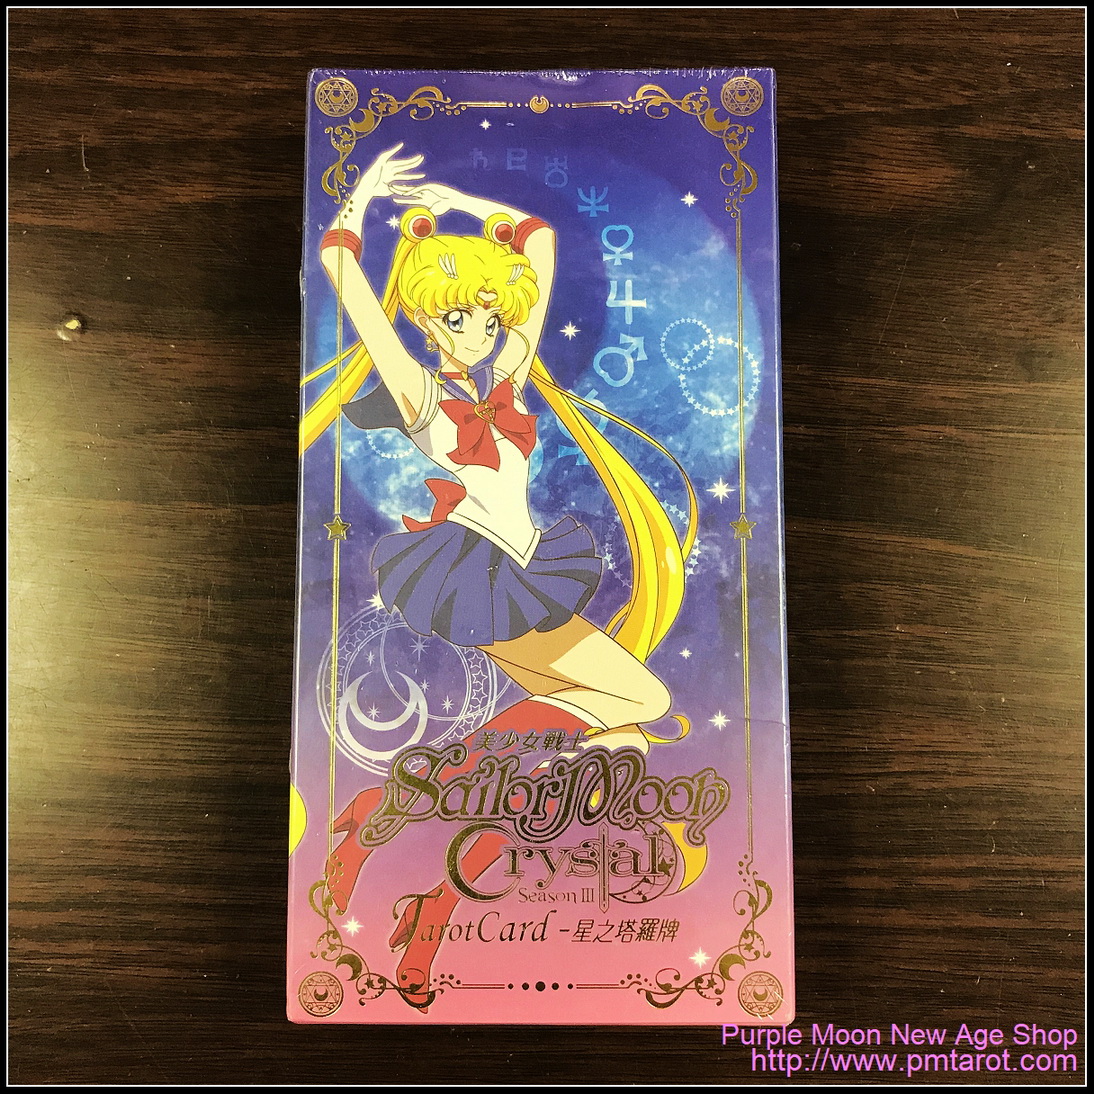 美少女戰士星之塔羅牌 (SailorMoon Crystal TarotCard)